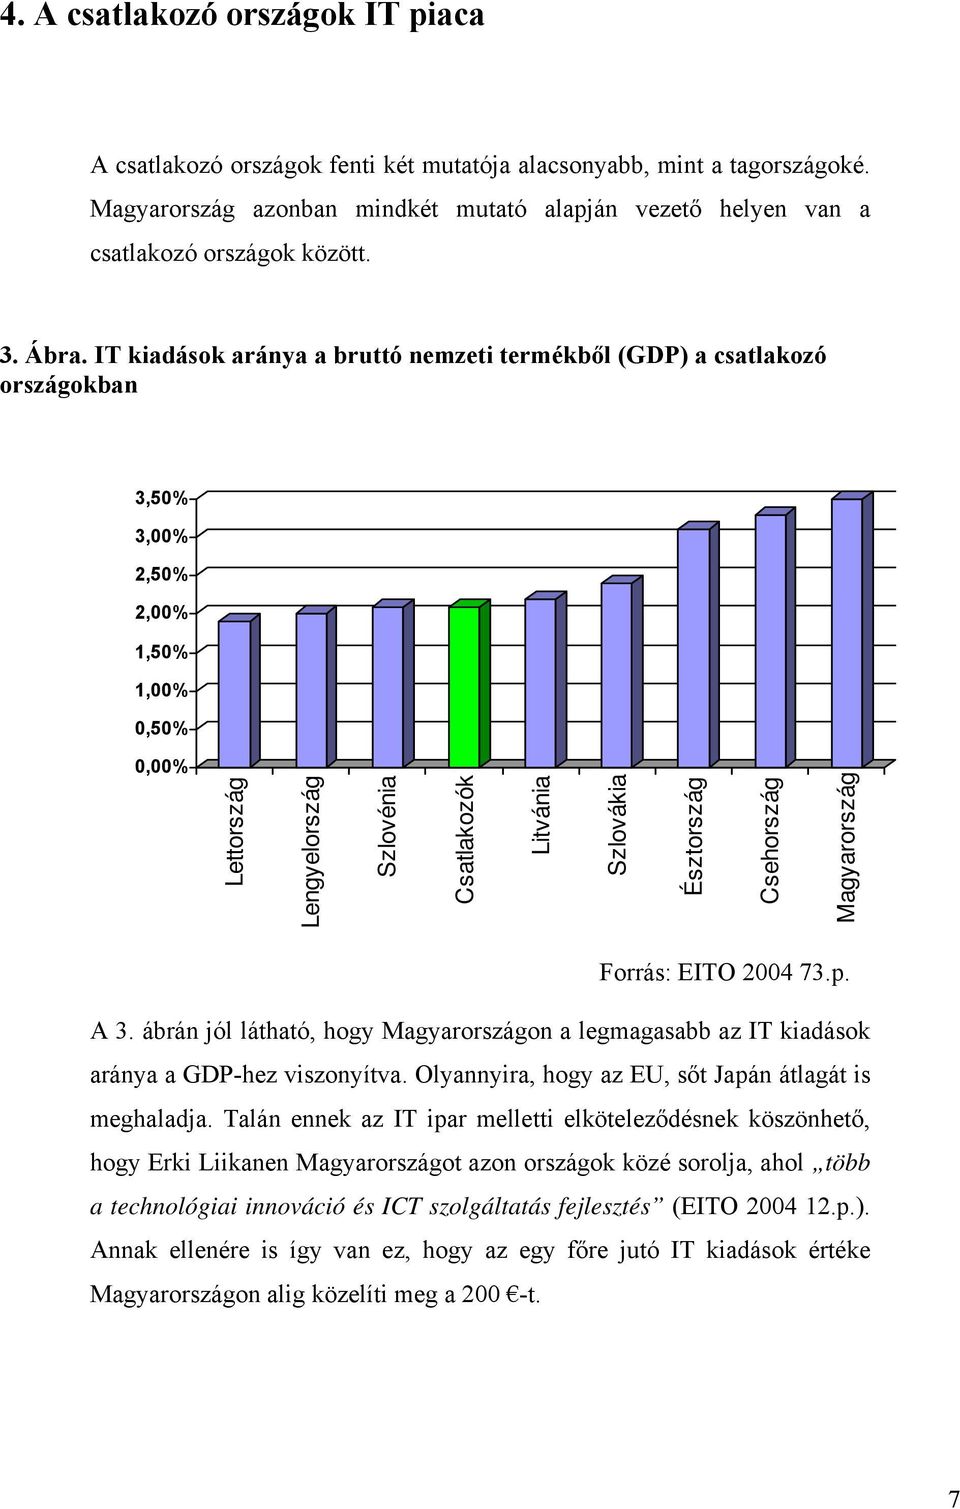 IT kiadások aránya a bruttó nemzeti termékből (GDP) a csatlakozó országokban 3,50% 3,00% 2,50% 2,00% 1,50% 1,00% 0,50% 0,00% Lettország Lengyelország Szlovénia Csatlakozók Litvánia Szlovákia